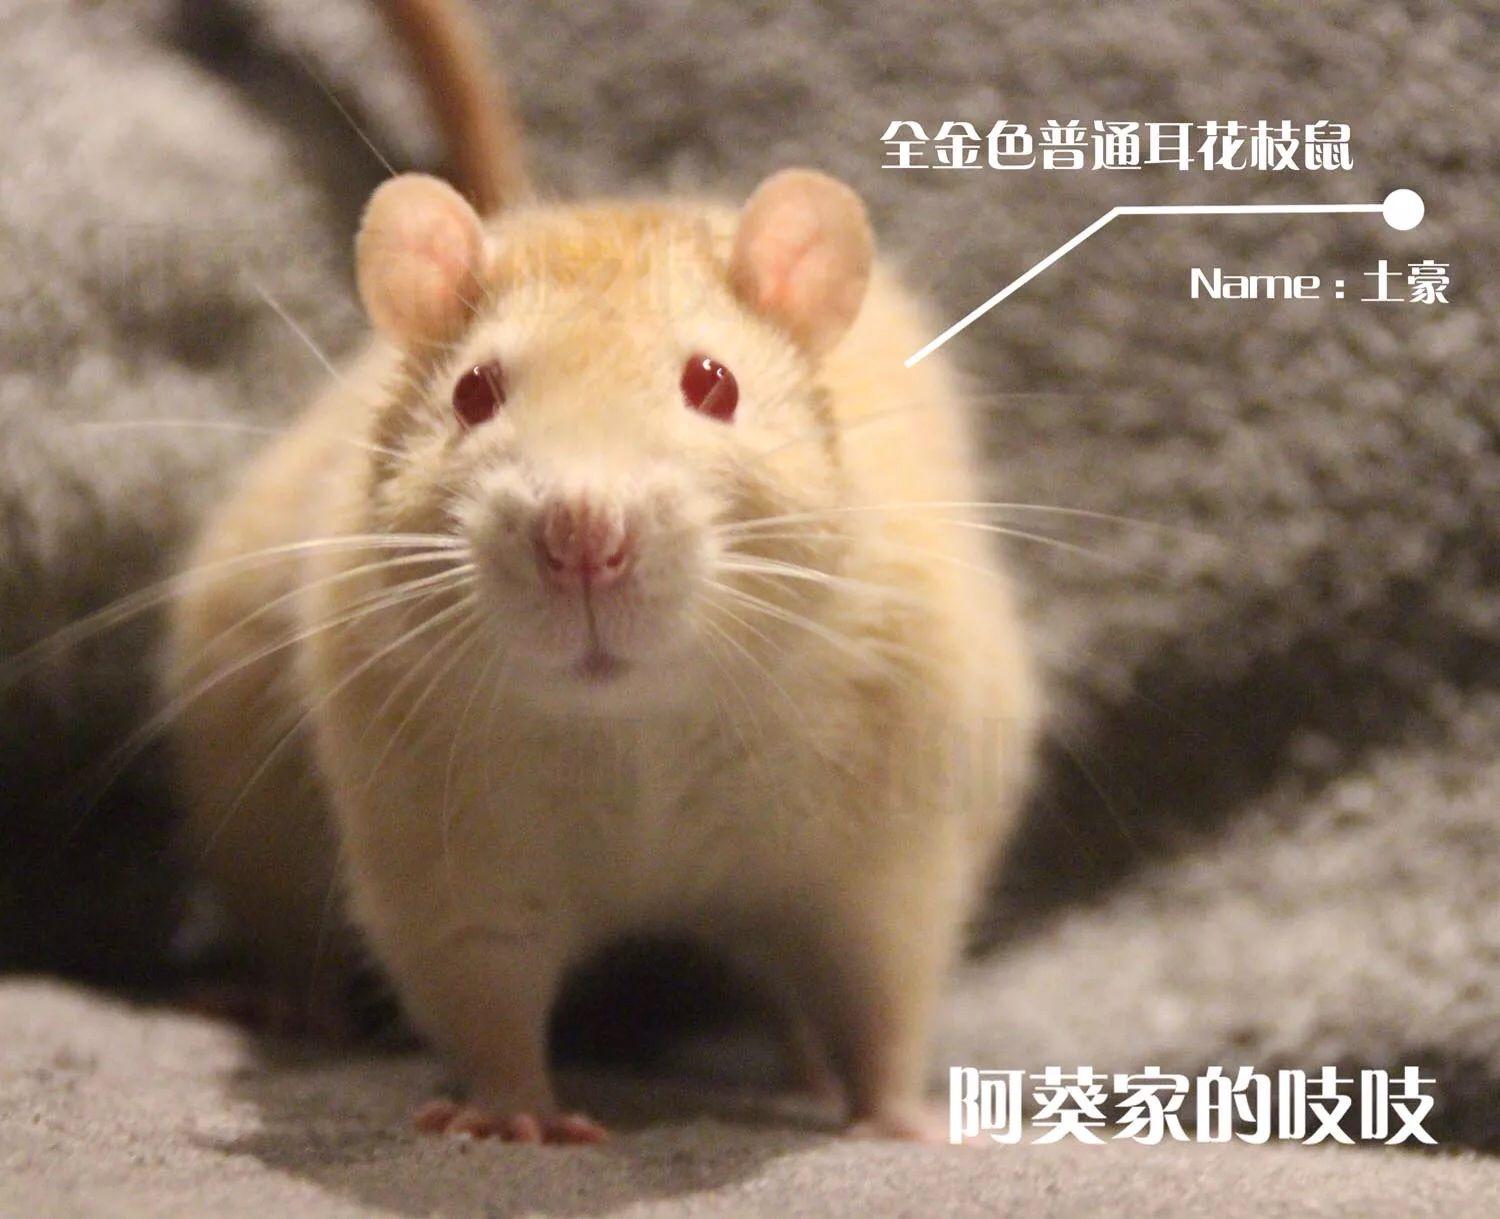 米老鼠是什麼鼠 | 混亂博物館 _米老鼠的資料 - 神拓網